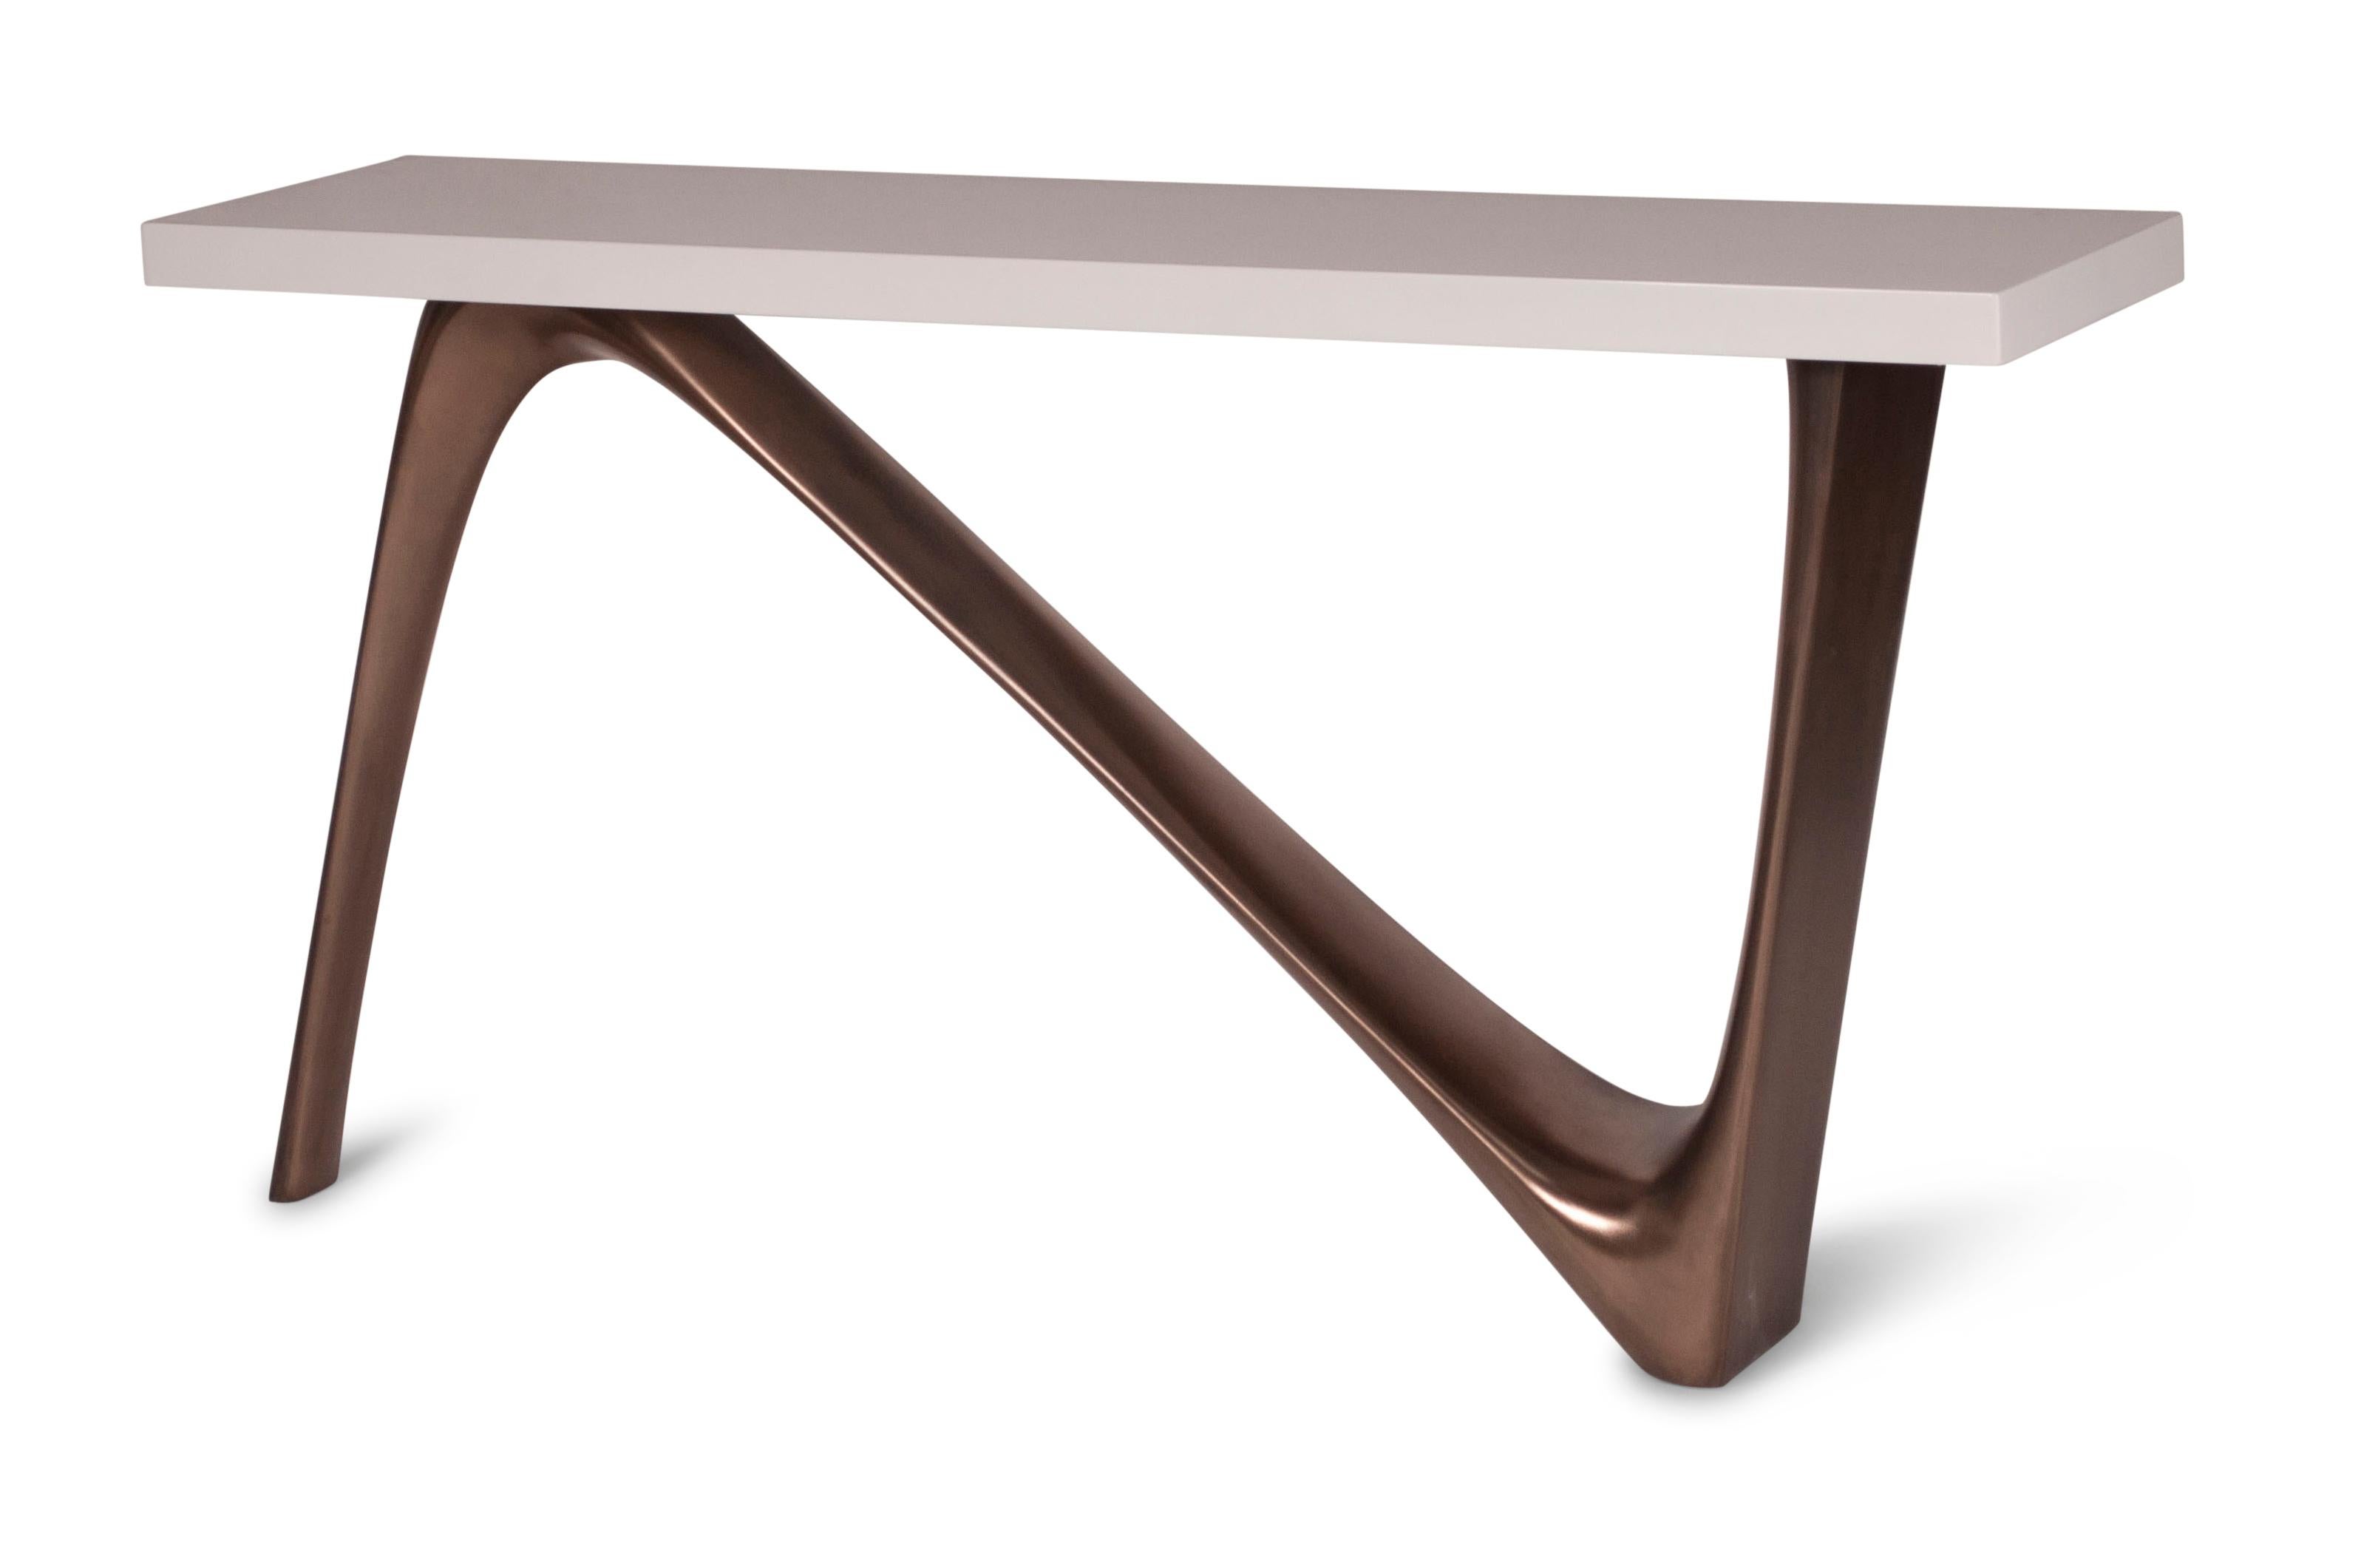 La table console Aviva est une console de forme organique. Les dimensions sont 60 